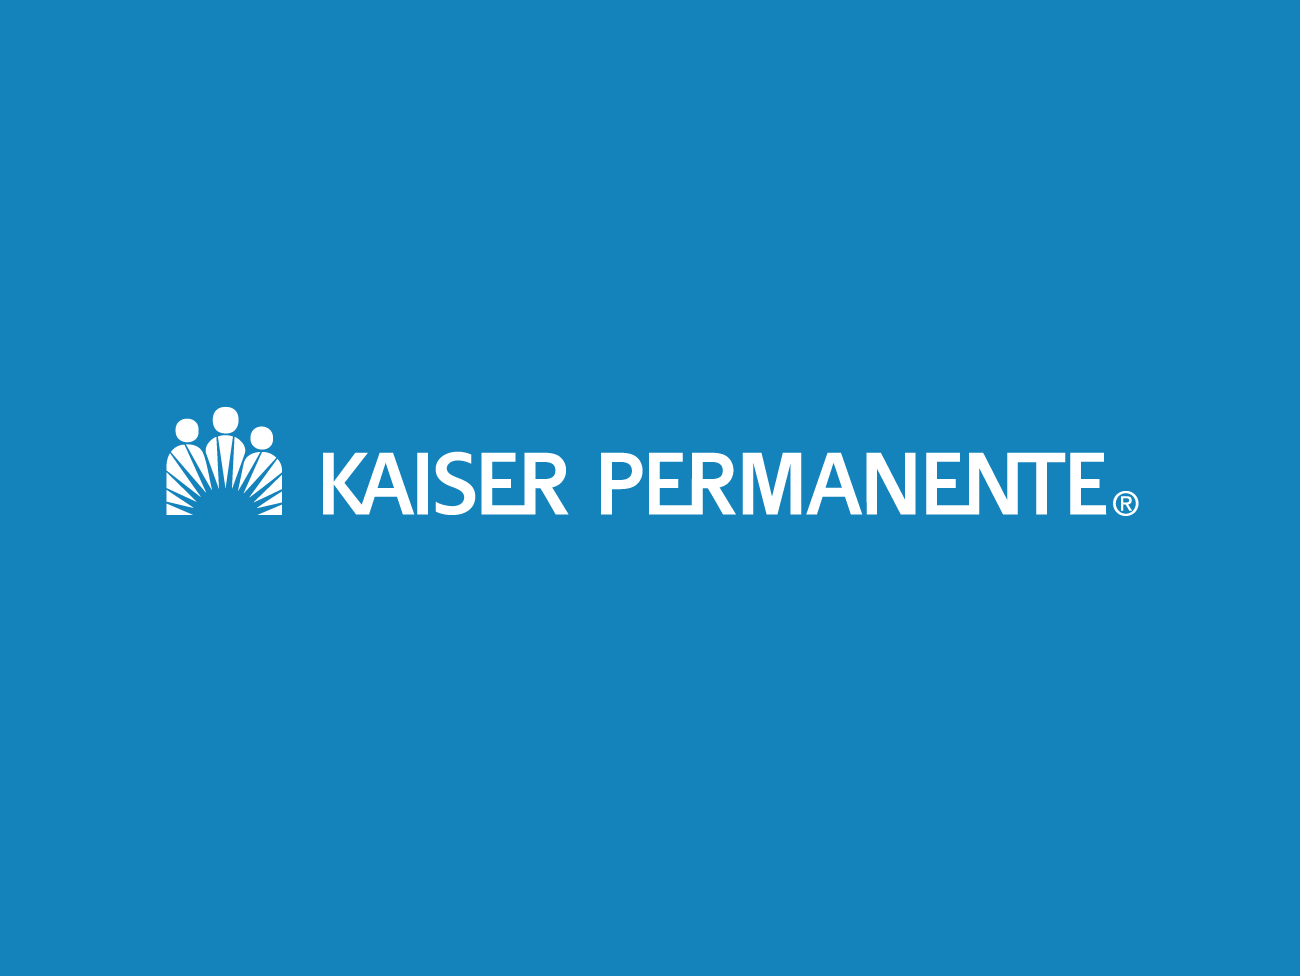 raybat官网在蓝色背景的Kaiser permanente标志